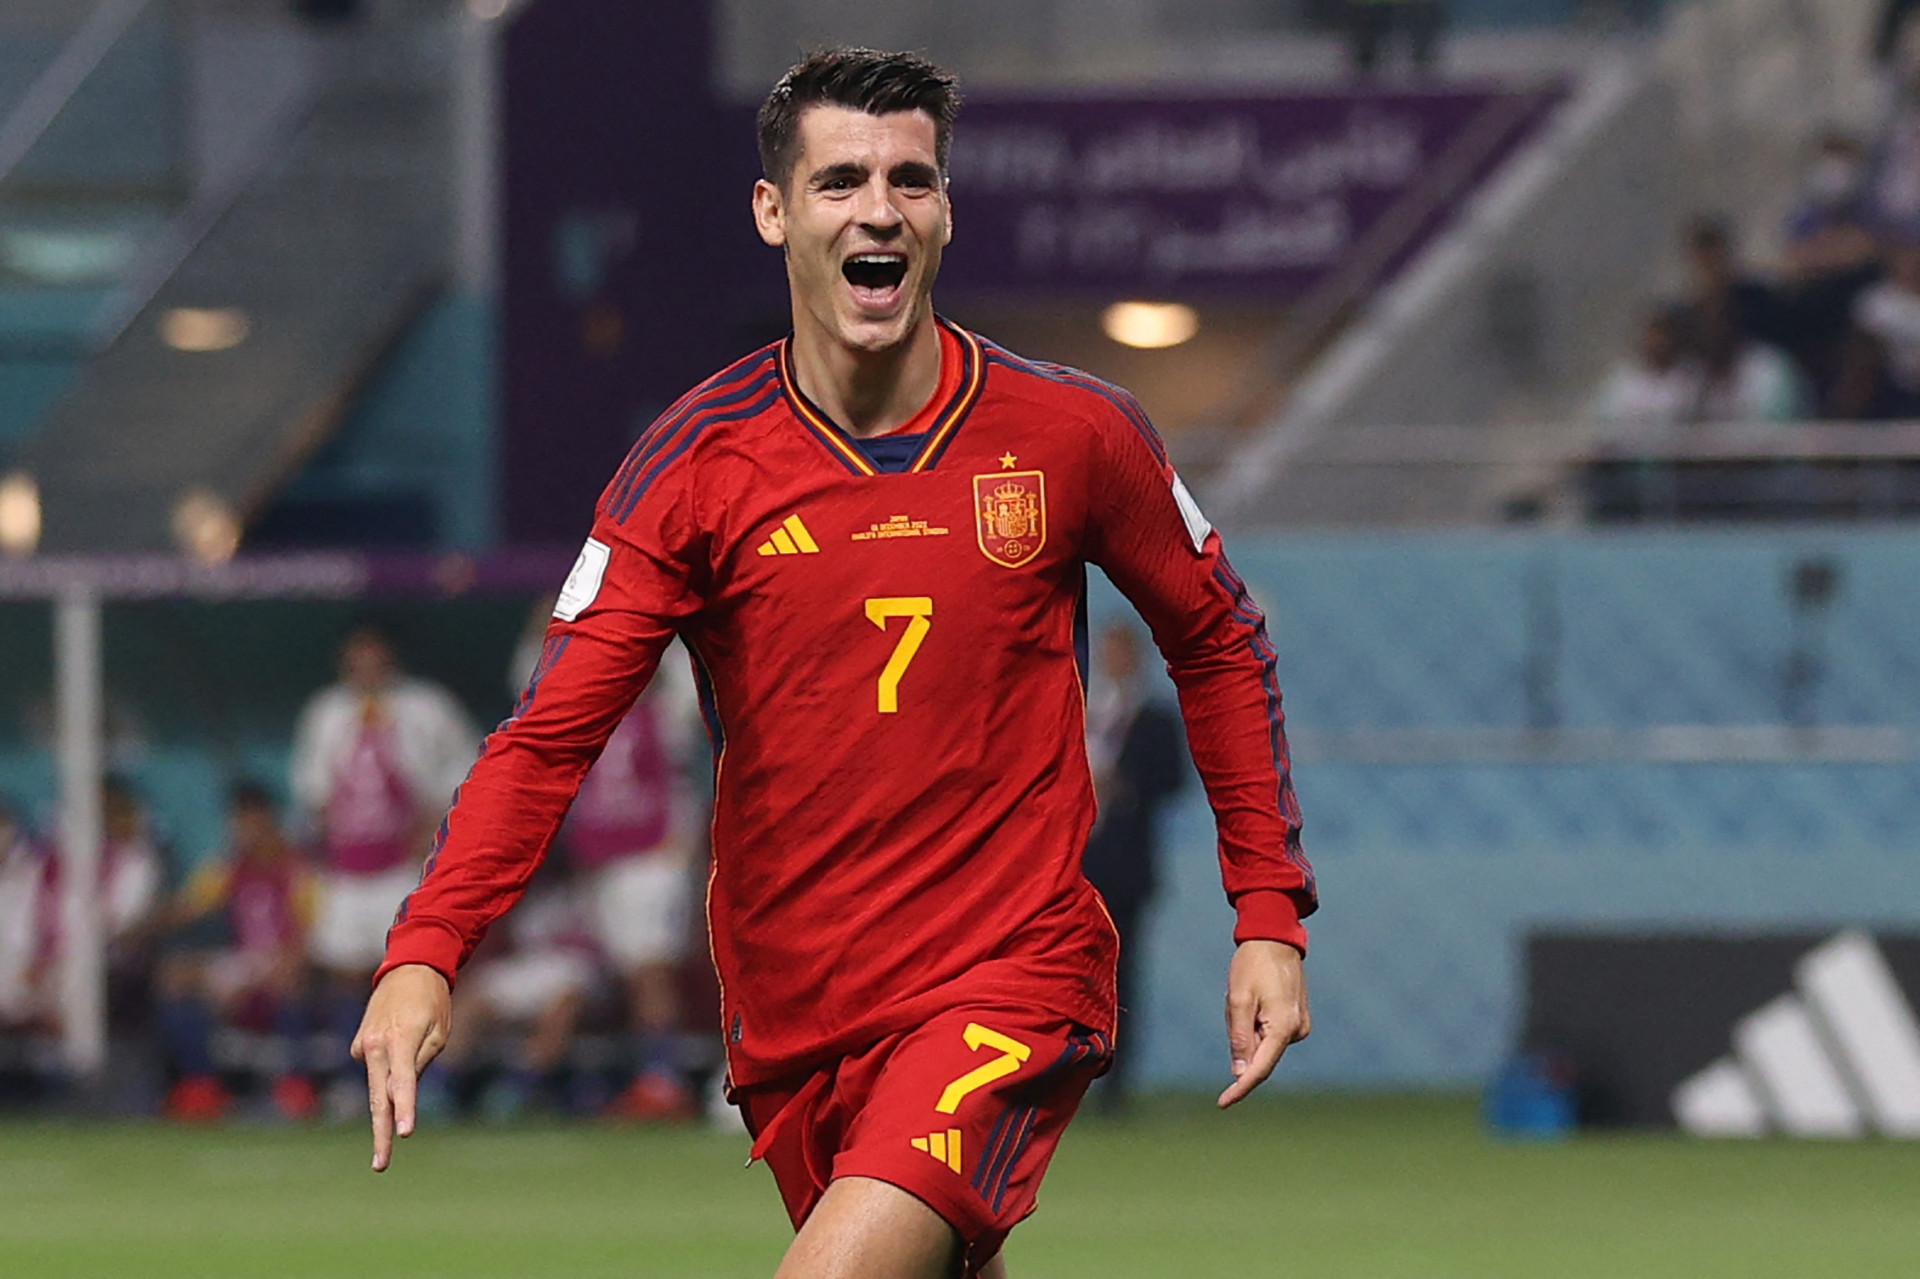 Marrocos x Espanha: prévia do jogo, notícias das equipes e transmissão ao  vivo